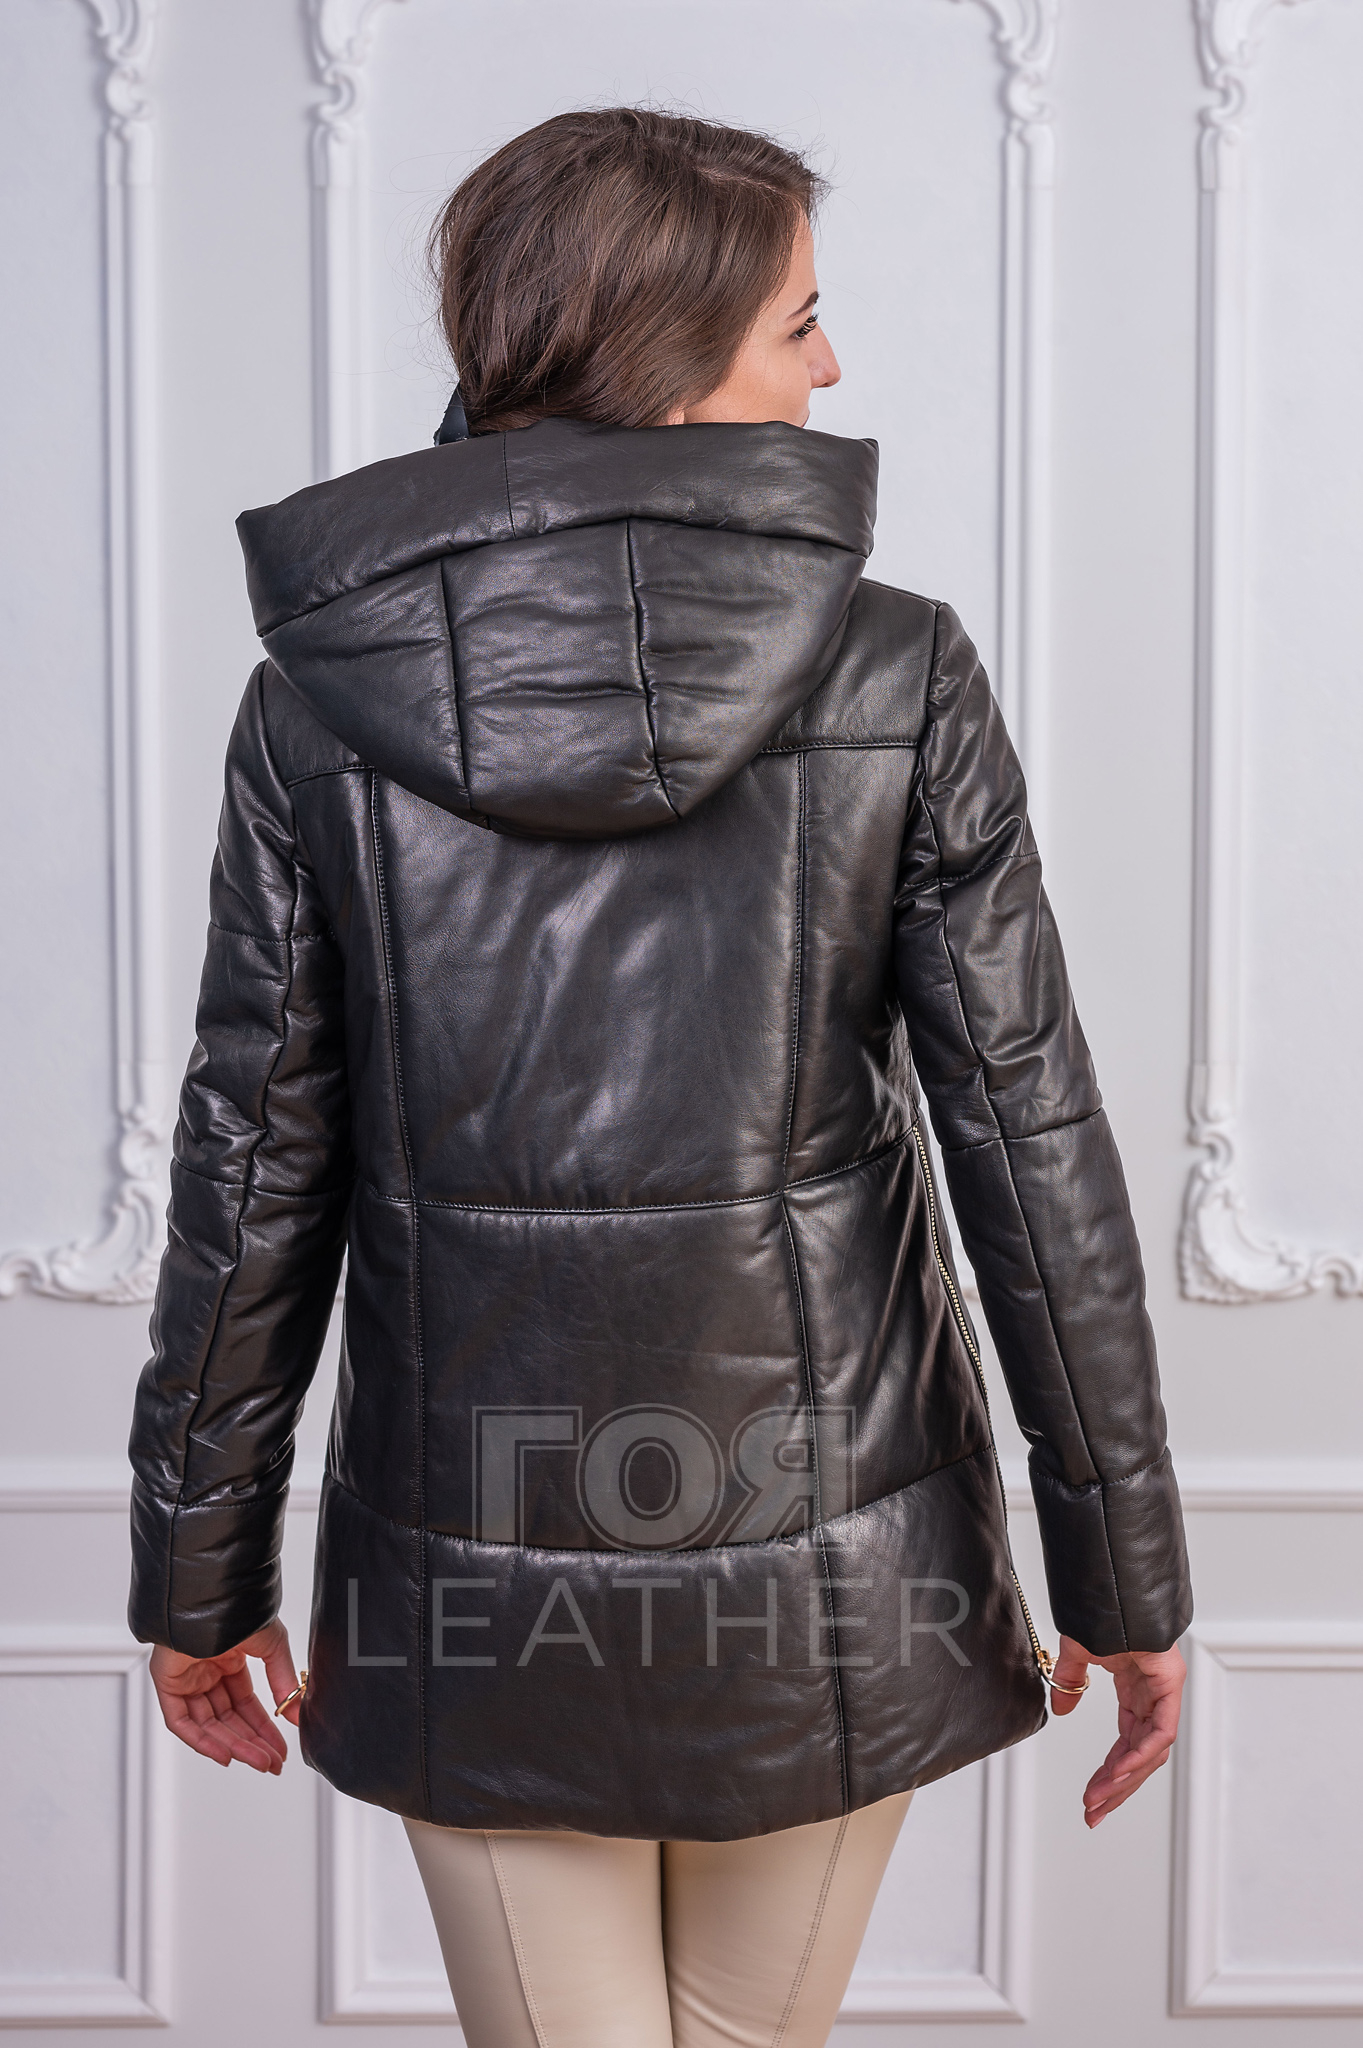 Дамска кожена парка от ГОЯ Leather. Нов модел дамска кожена парка изработена от 100% висококачествена агнешка кожа. Изключително лека и топла дреха с модерна визия.